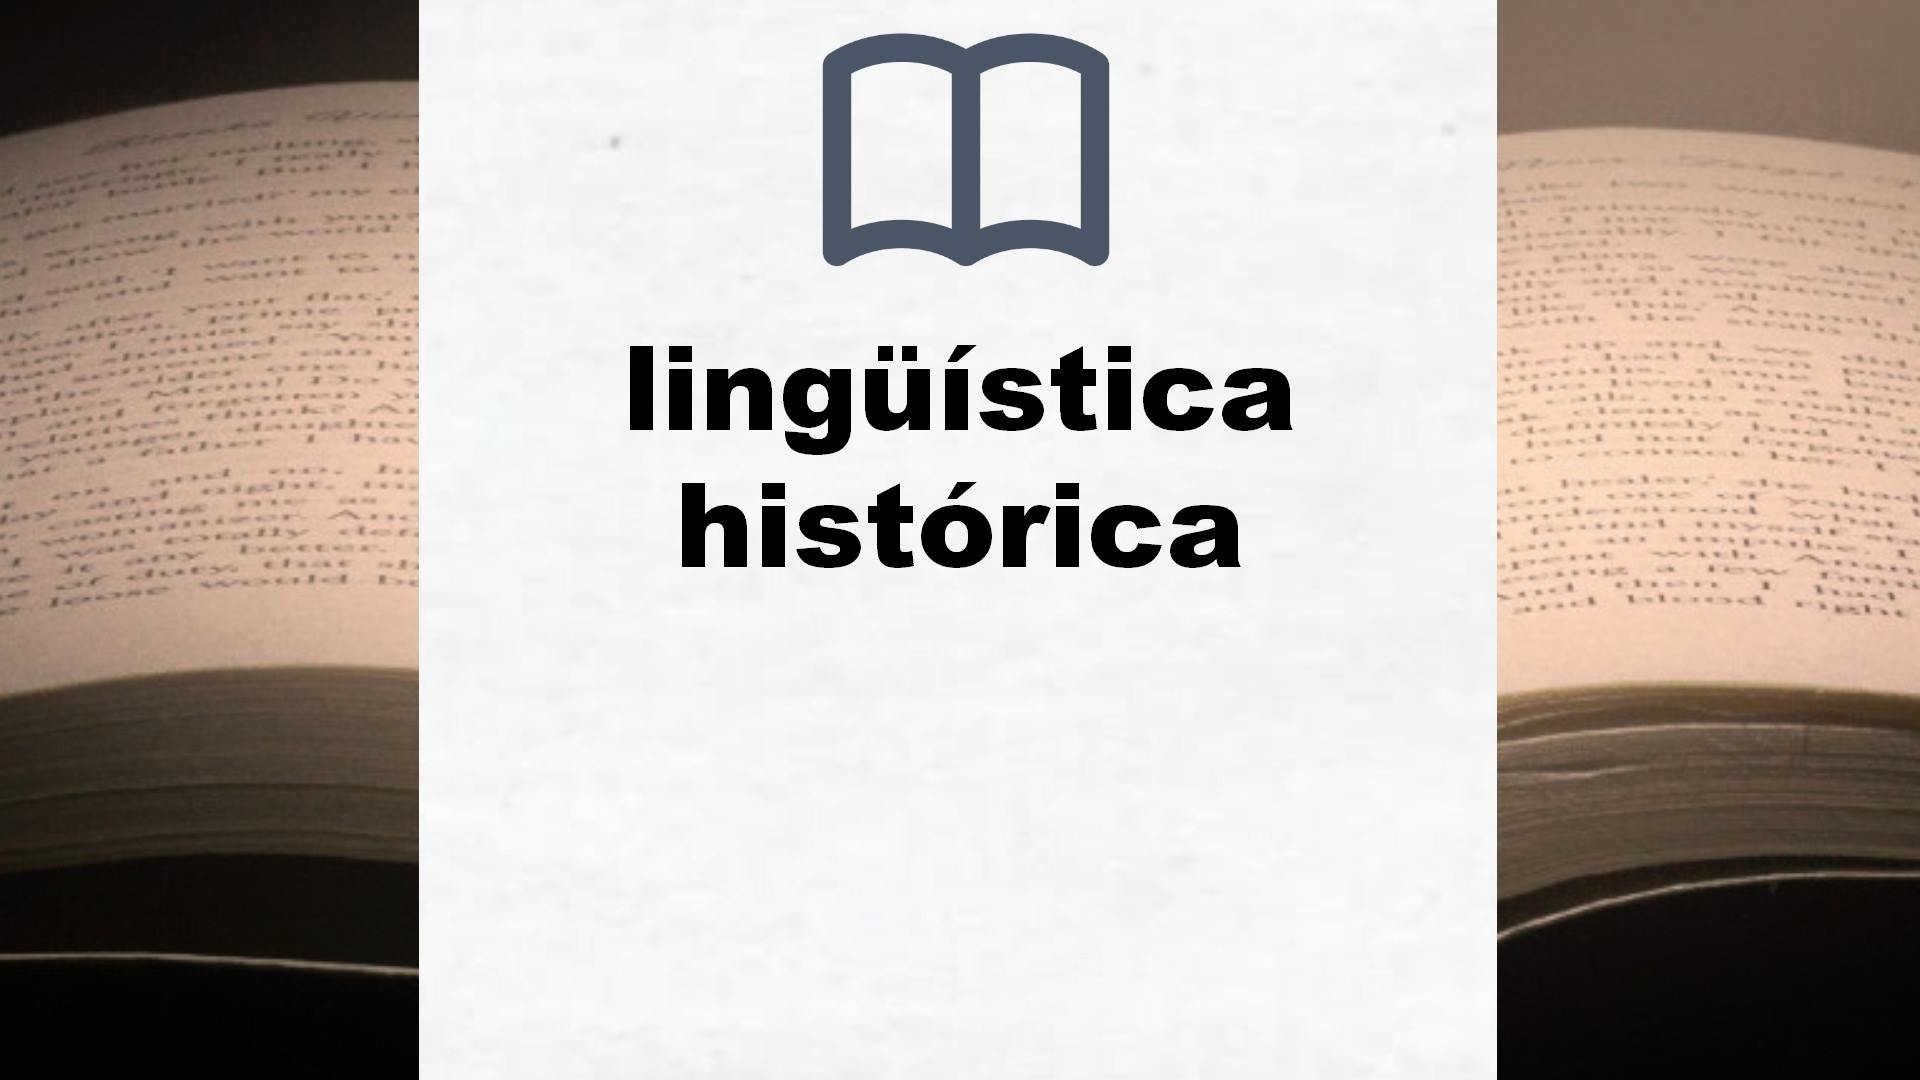 Libros sobre lingüística histórica